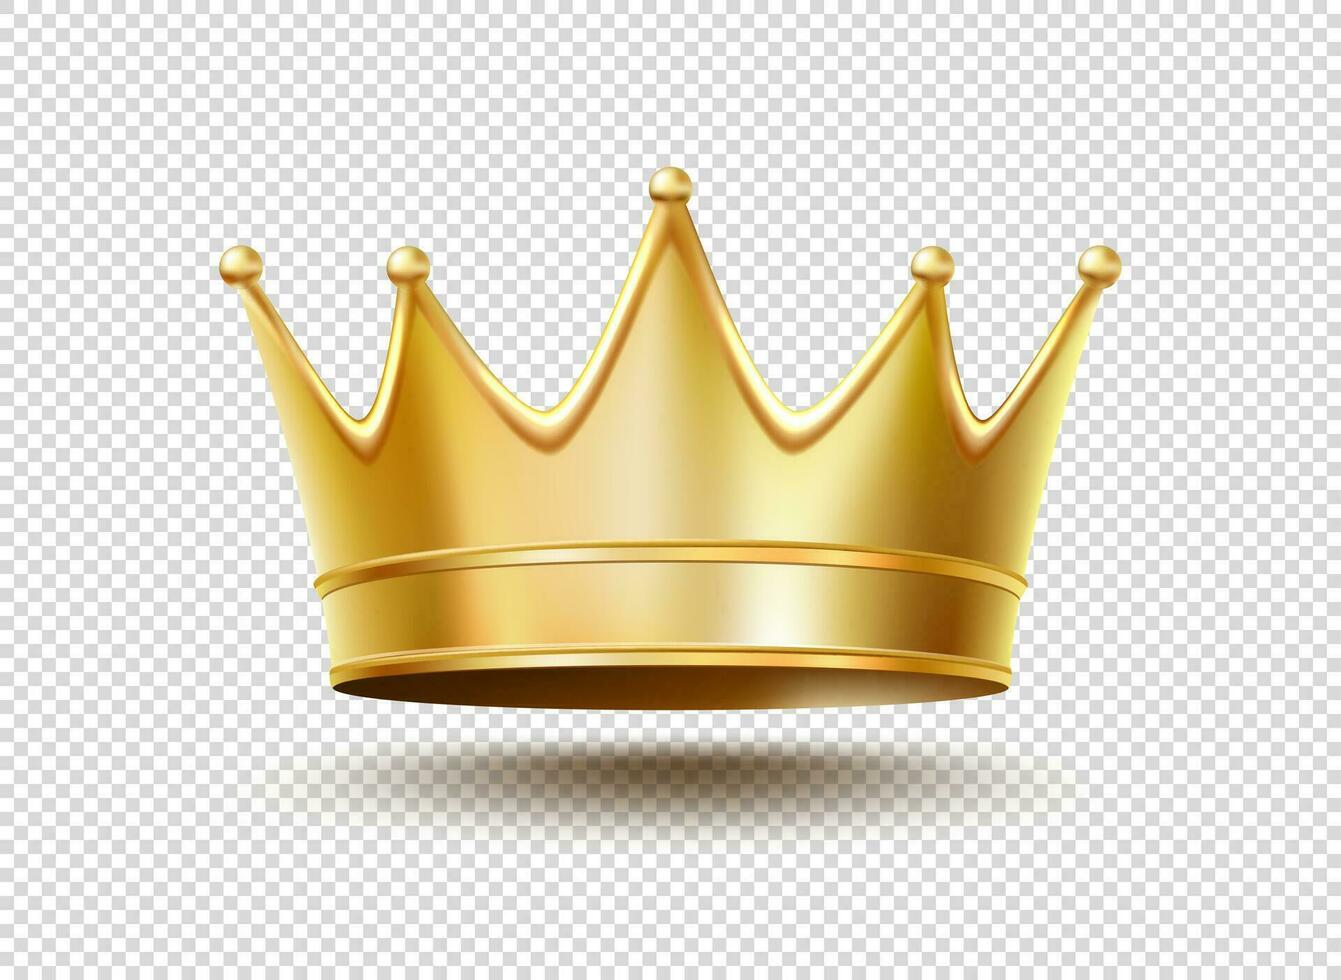 realistico d'oro re o Regina corona, reale oro vettore